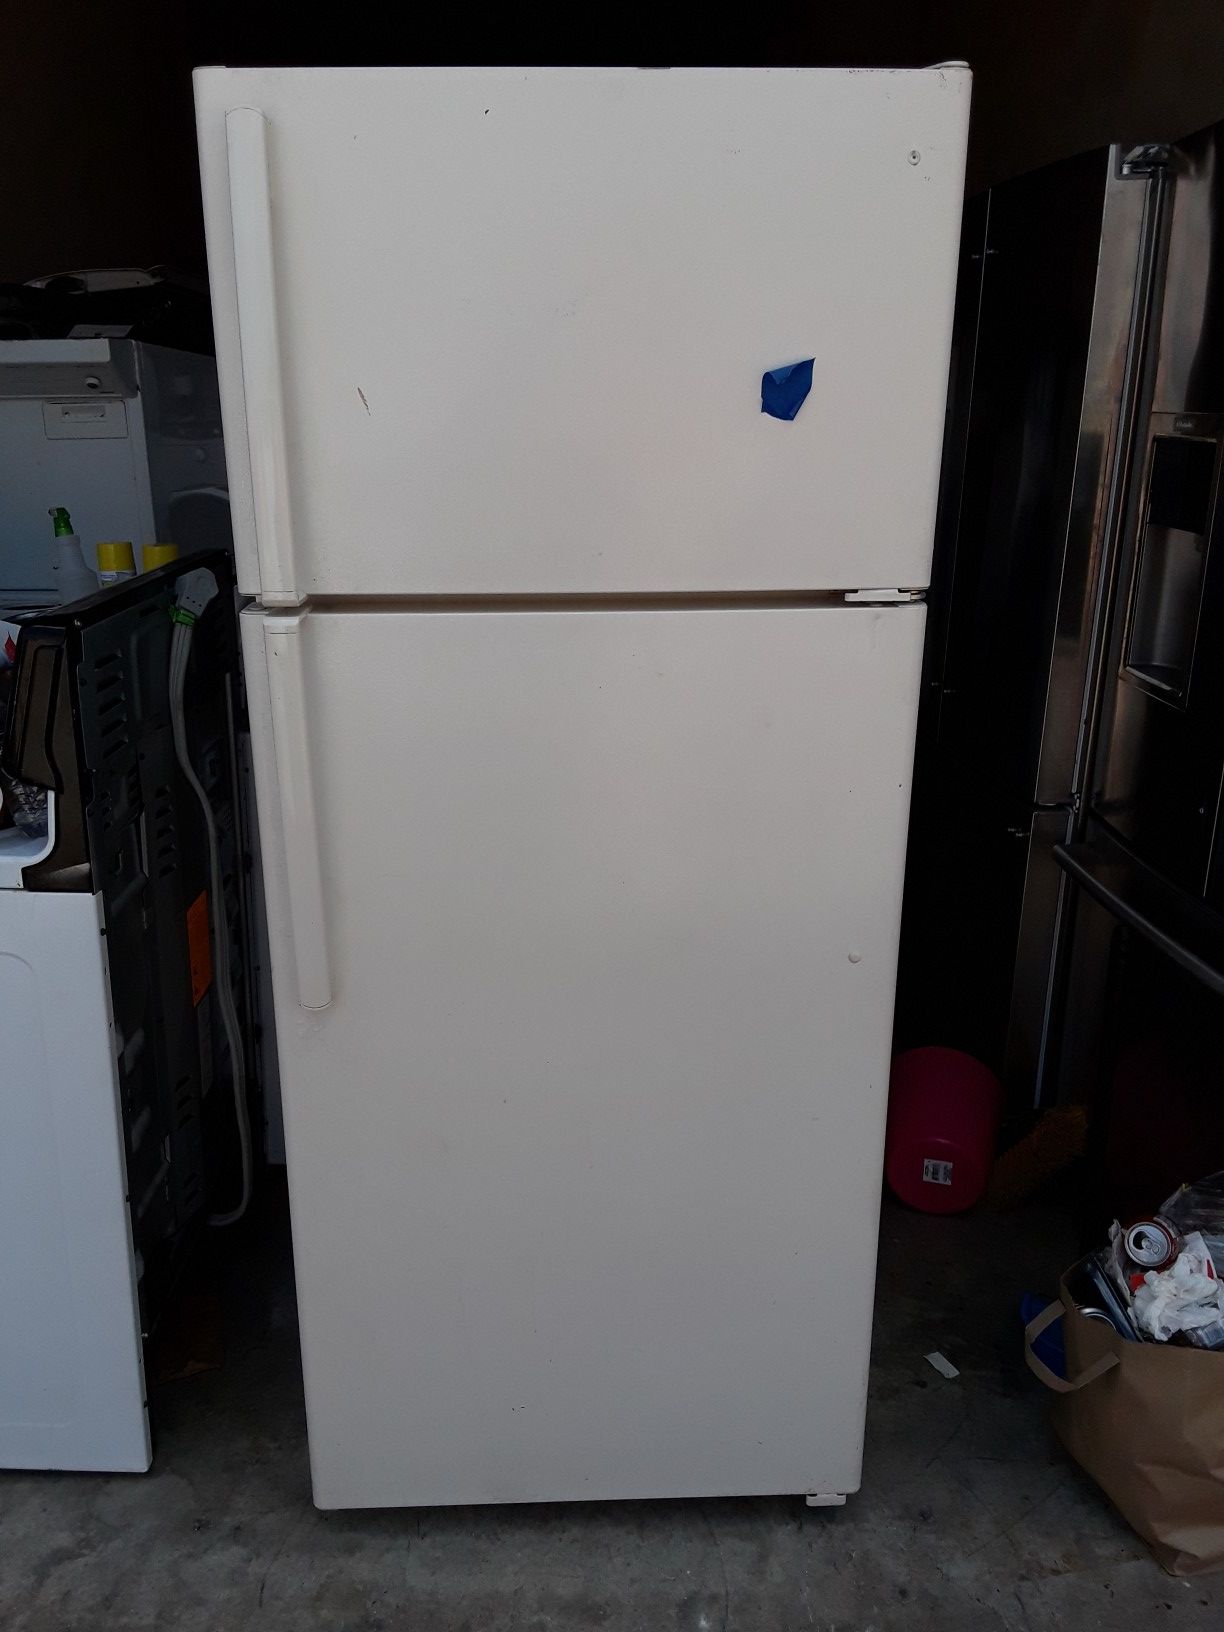 Newer model Frigidaire white fridge